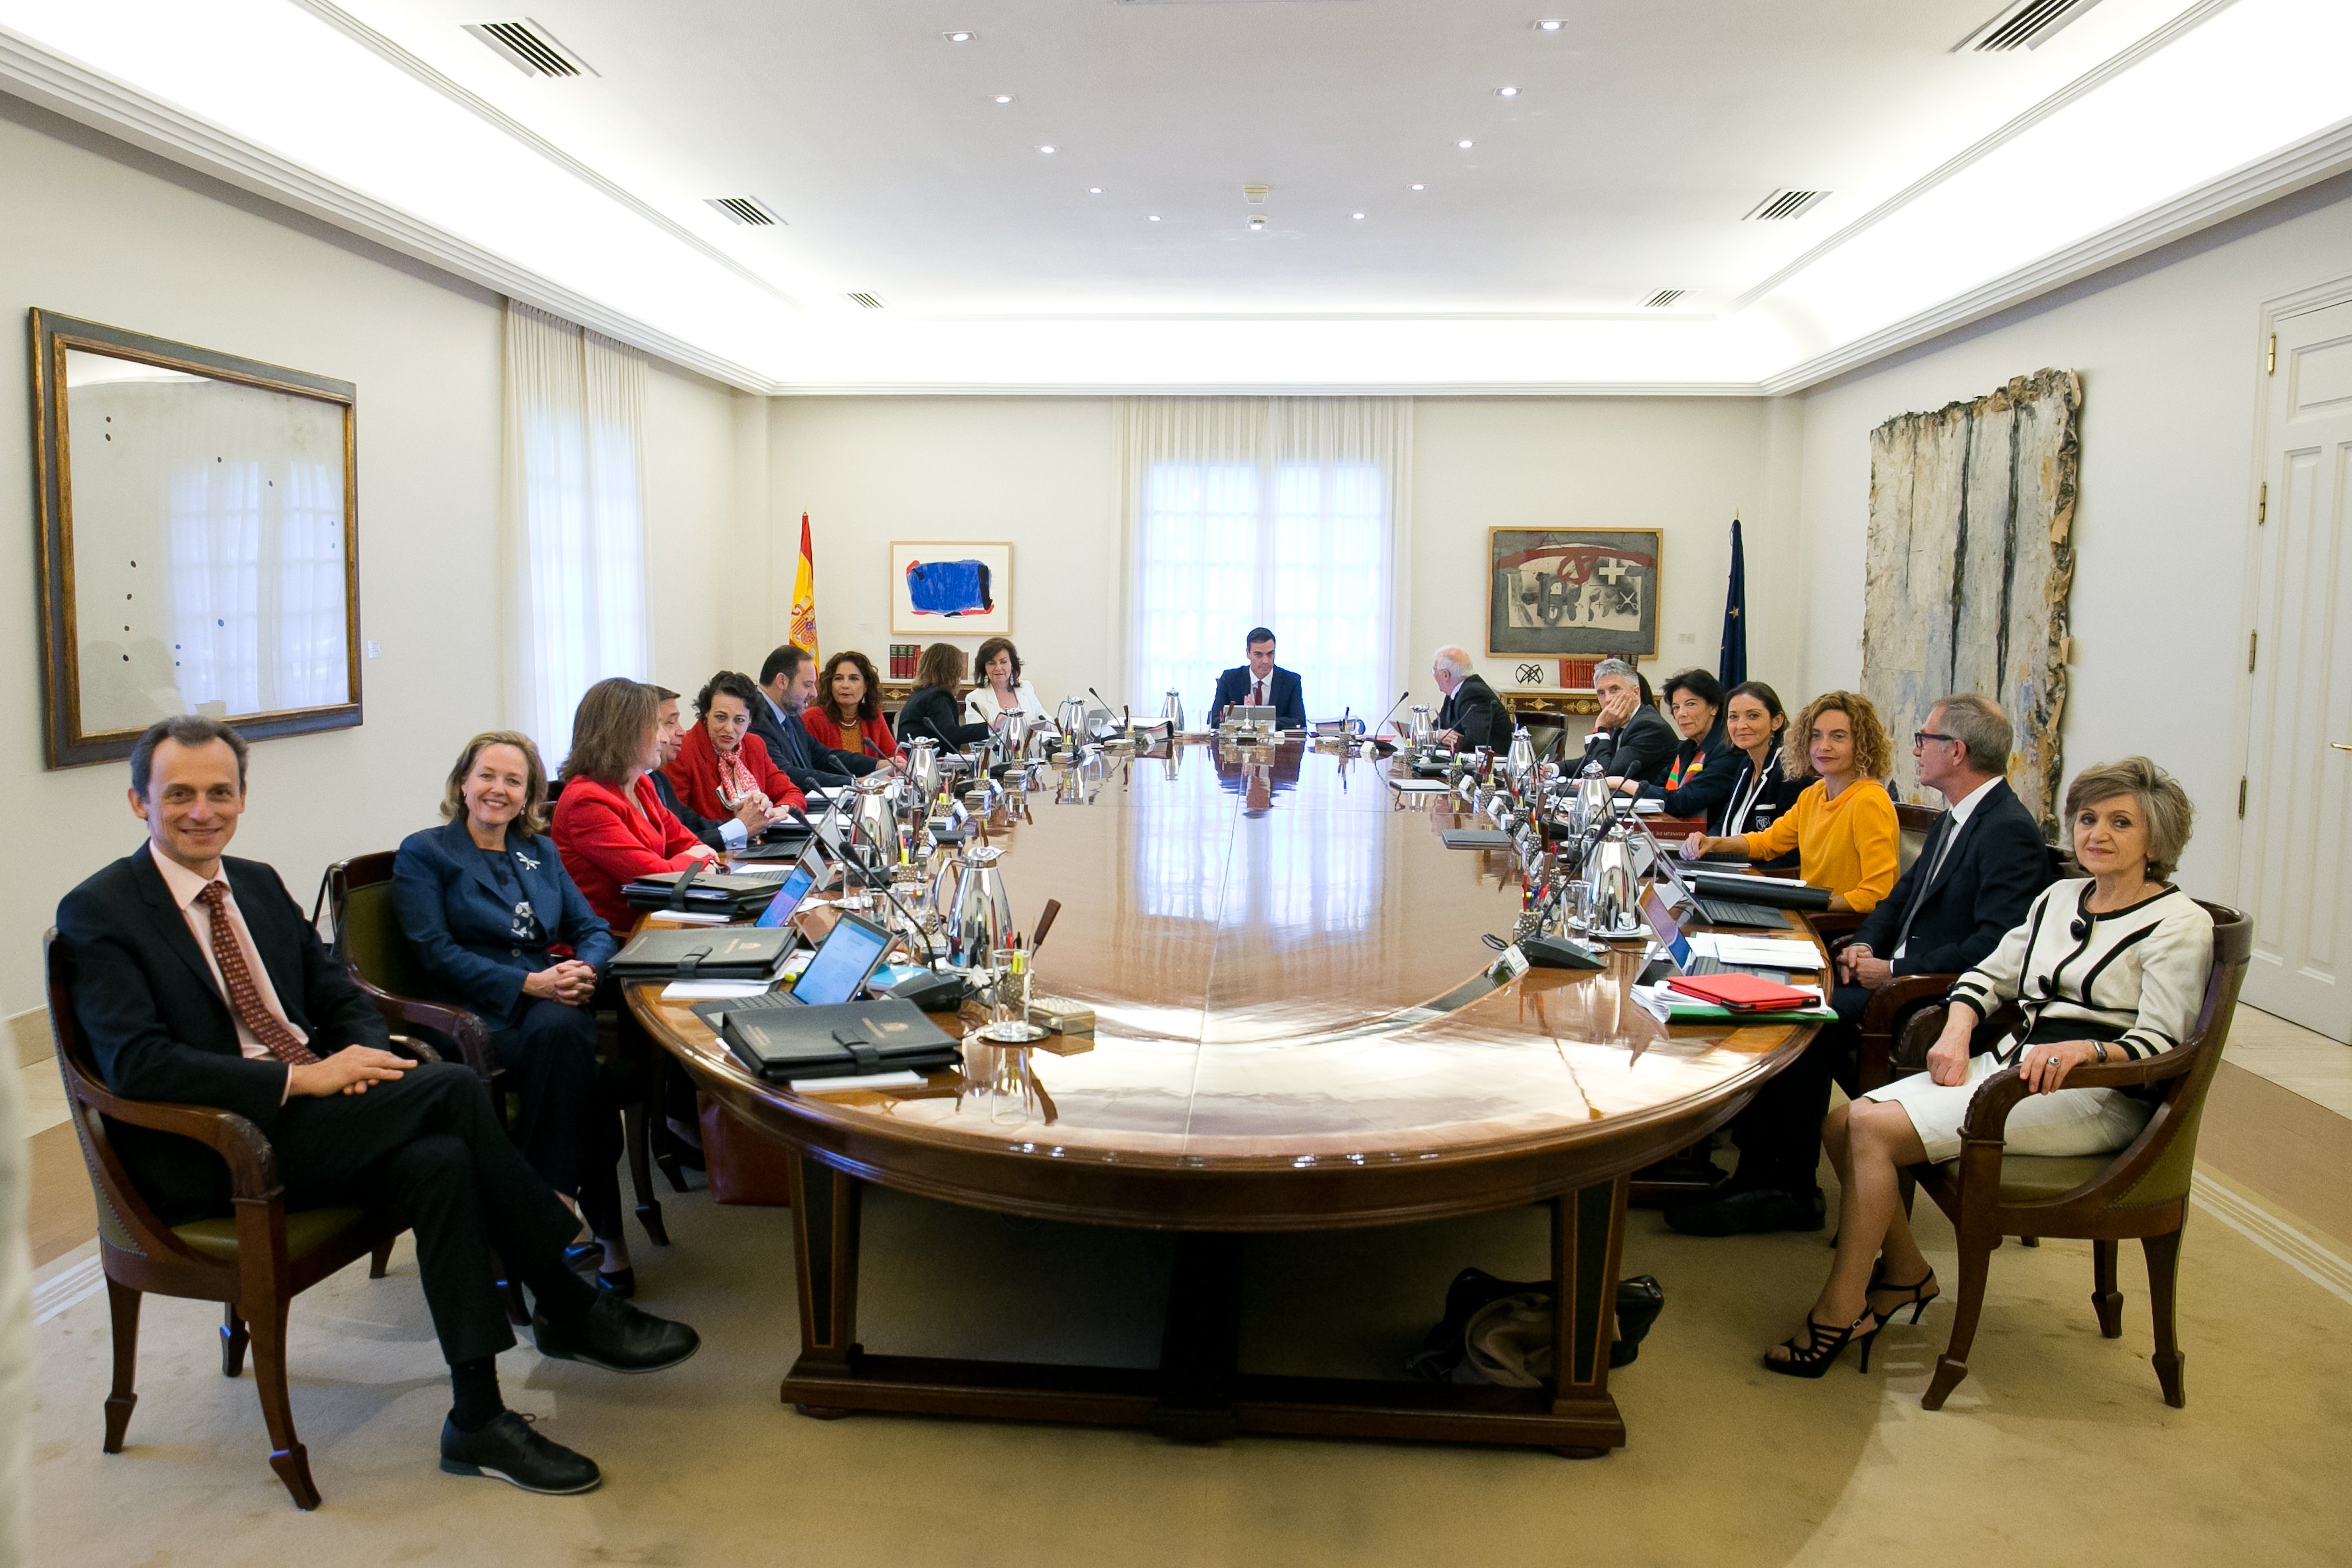 ¿Te parece bien la reunión del Consejo de Ministros el 21-D en Barcelona?